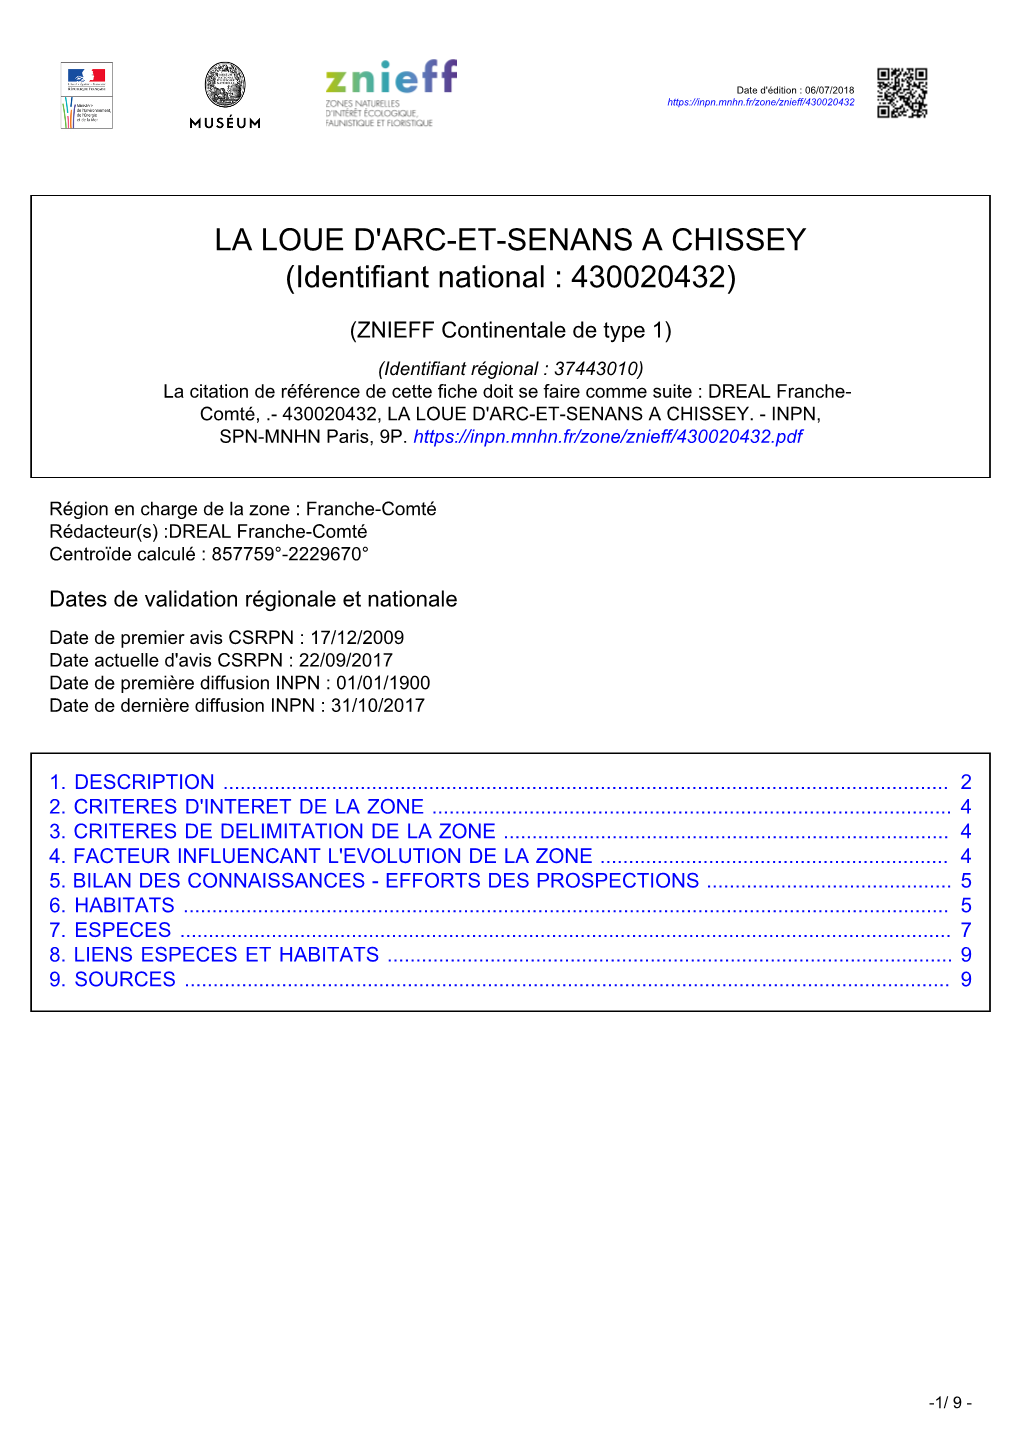 LA LOUE D'arc-ET-SENANS a CHISSEY (Identifiant National : 430020432)